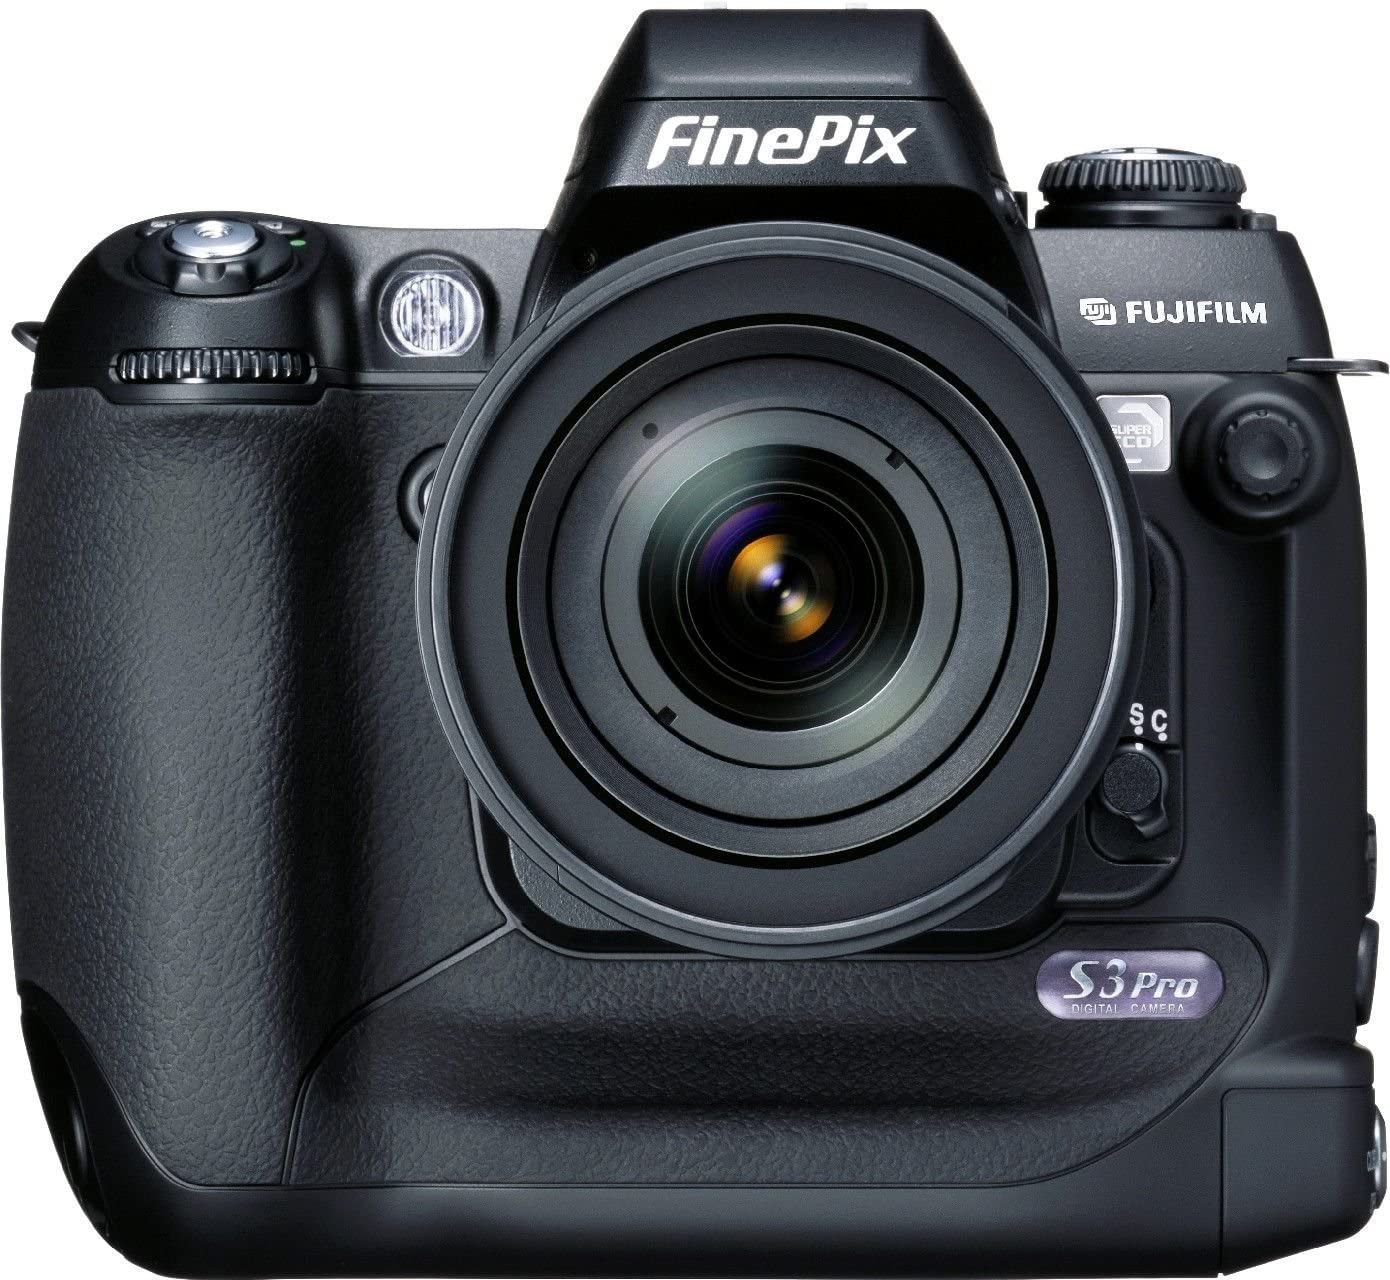 Fujifilm Finepix S3 Pro main image